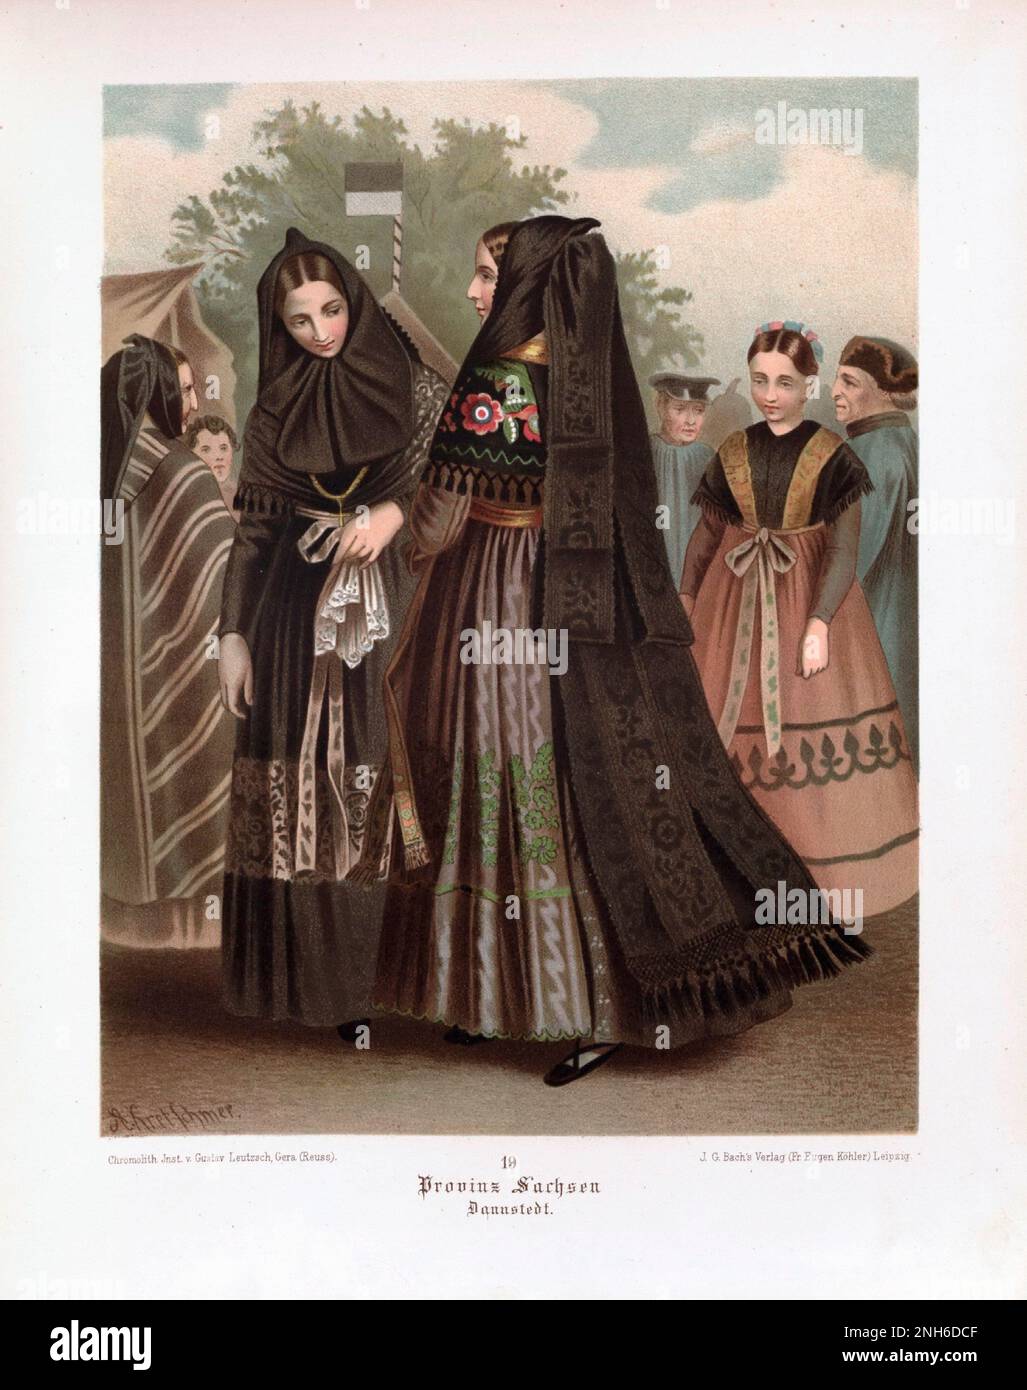 Disfraz folclórico alemán. Sajonia (alemán: Sachsen). litografía del siglo 19th. Foto de stock